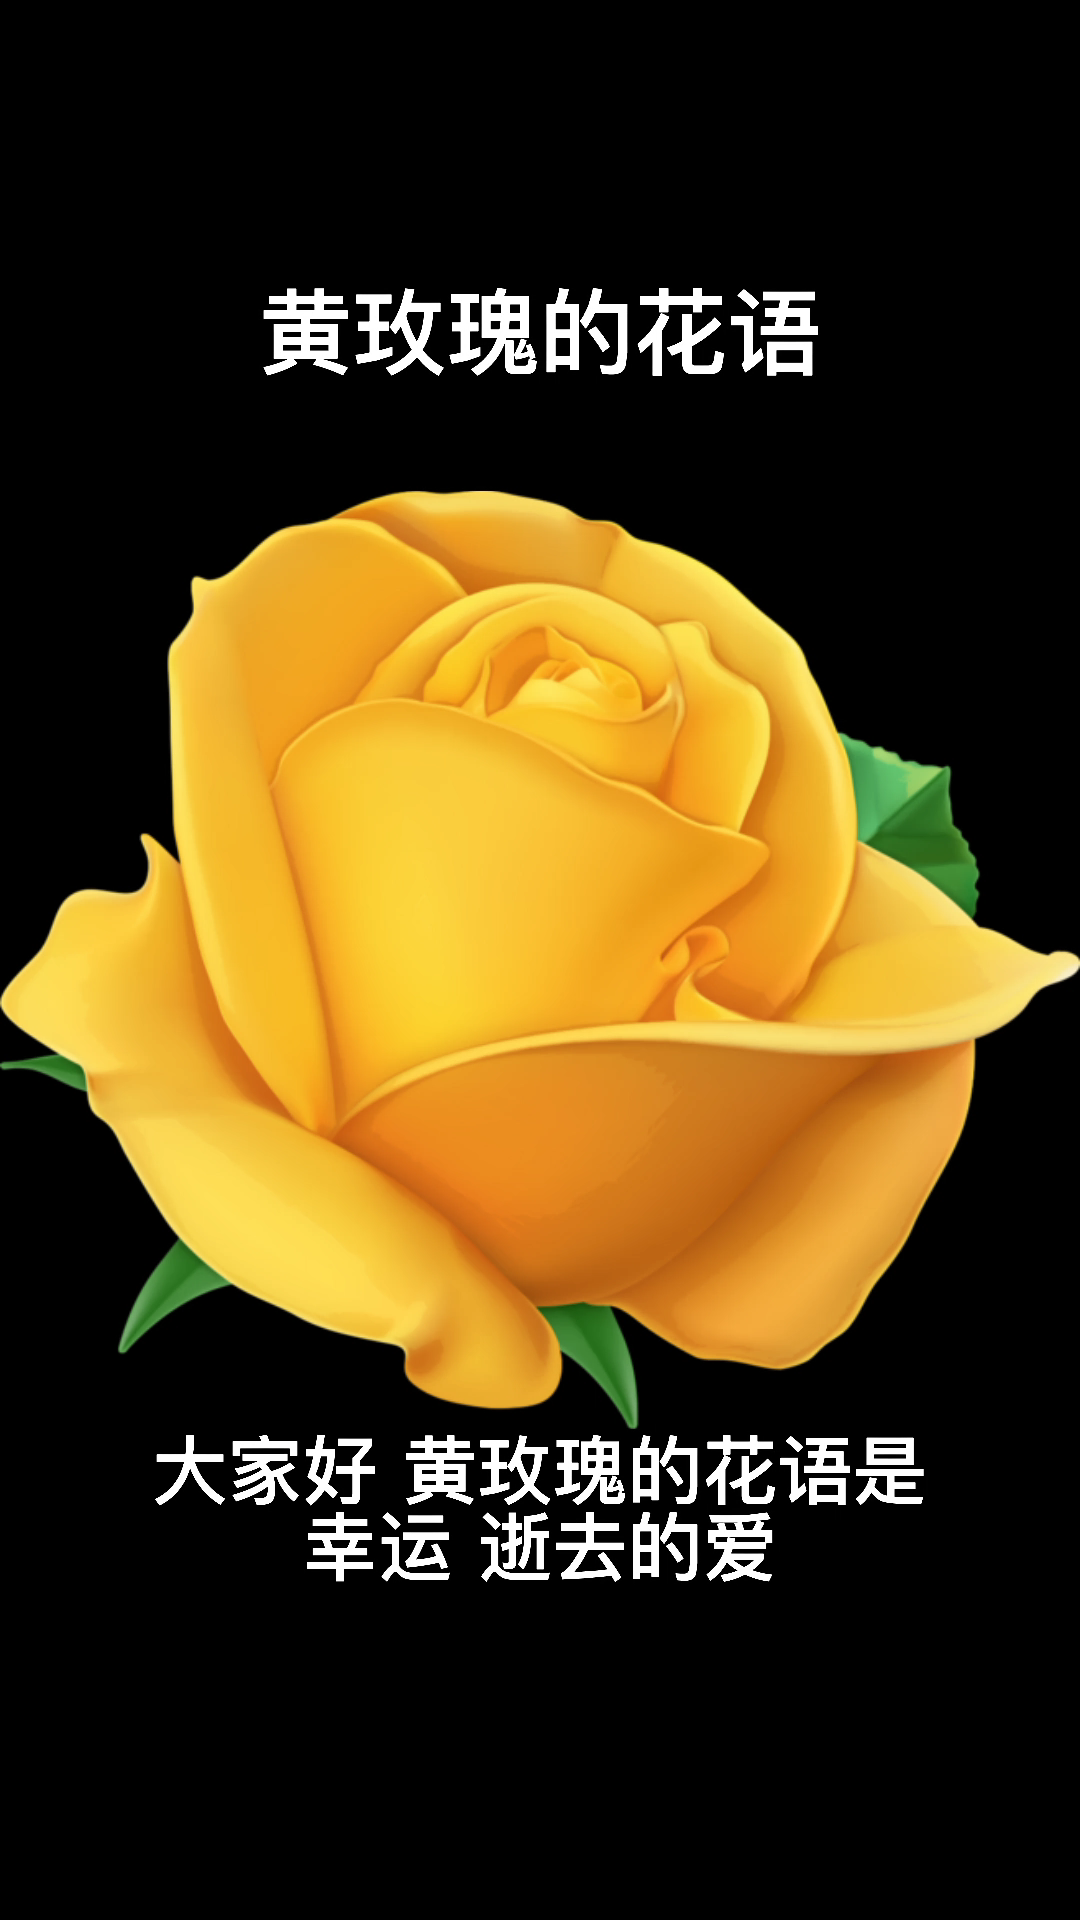 黄玫瑰的花语是幸运,逝去的爱